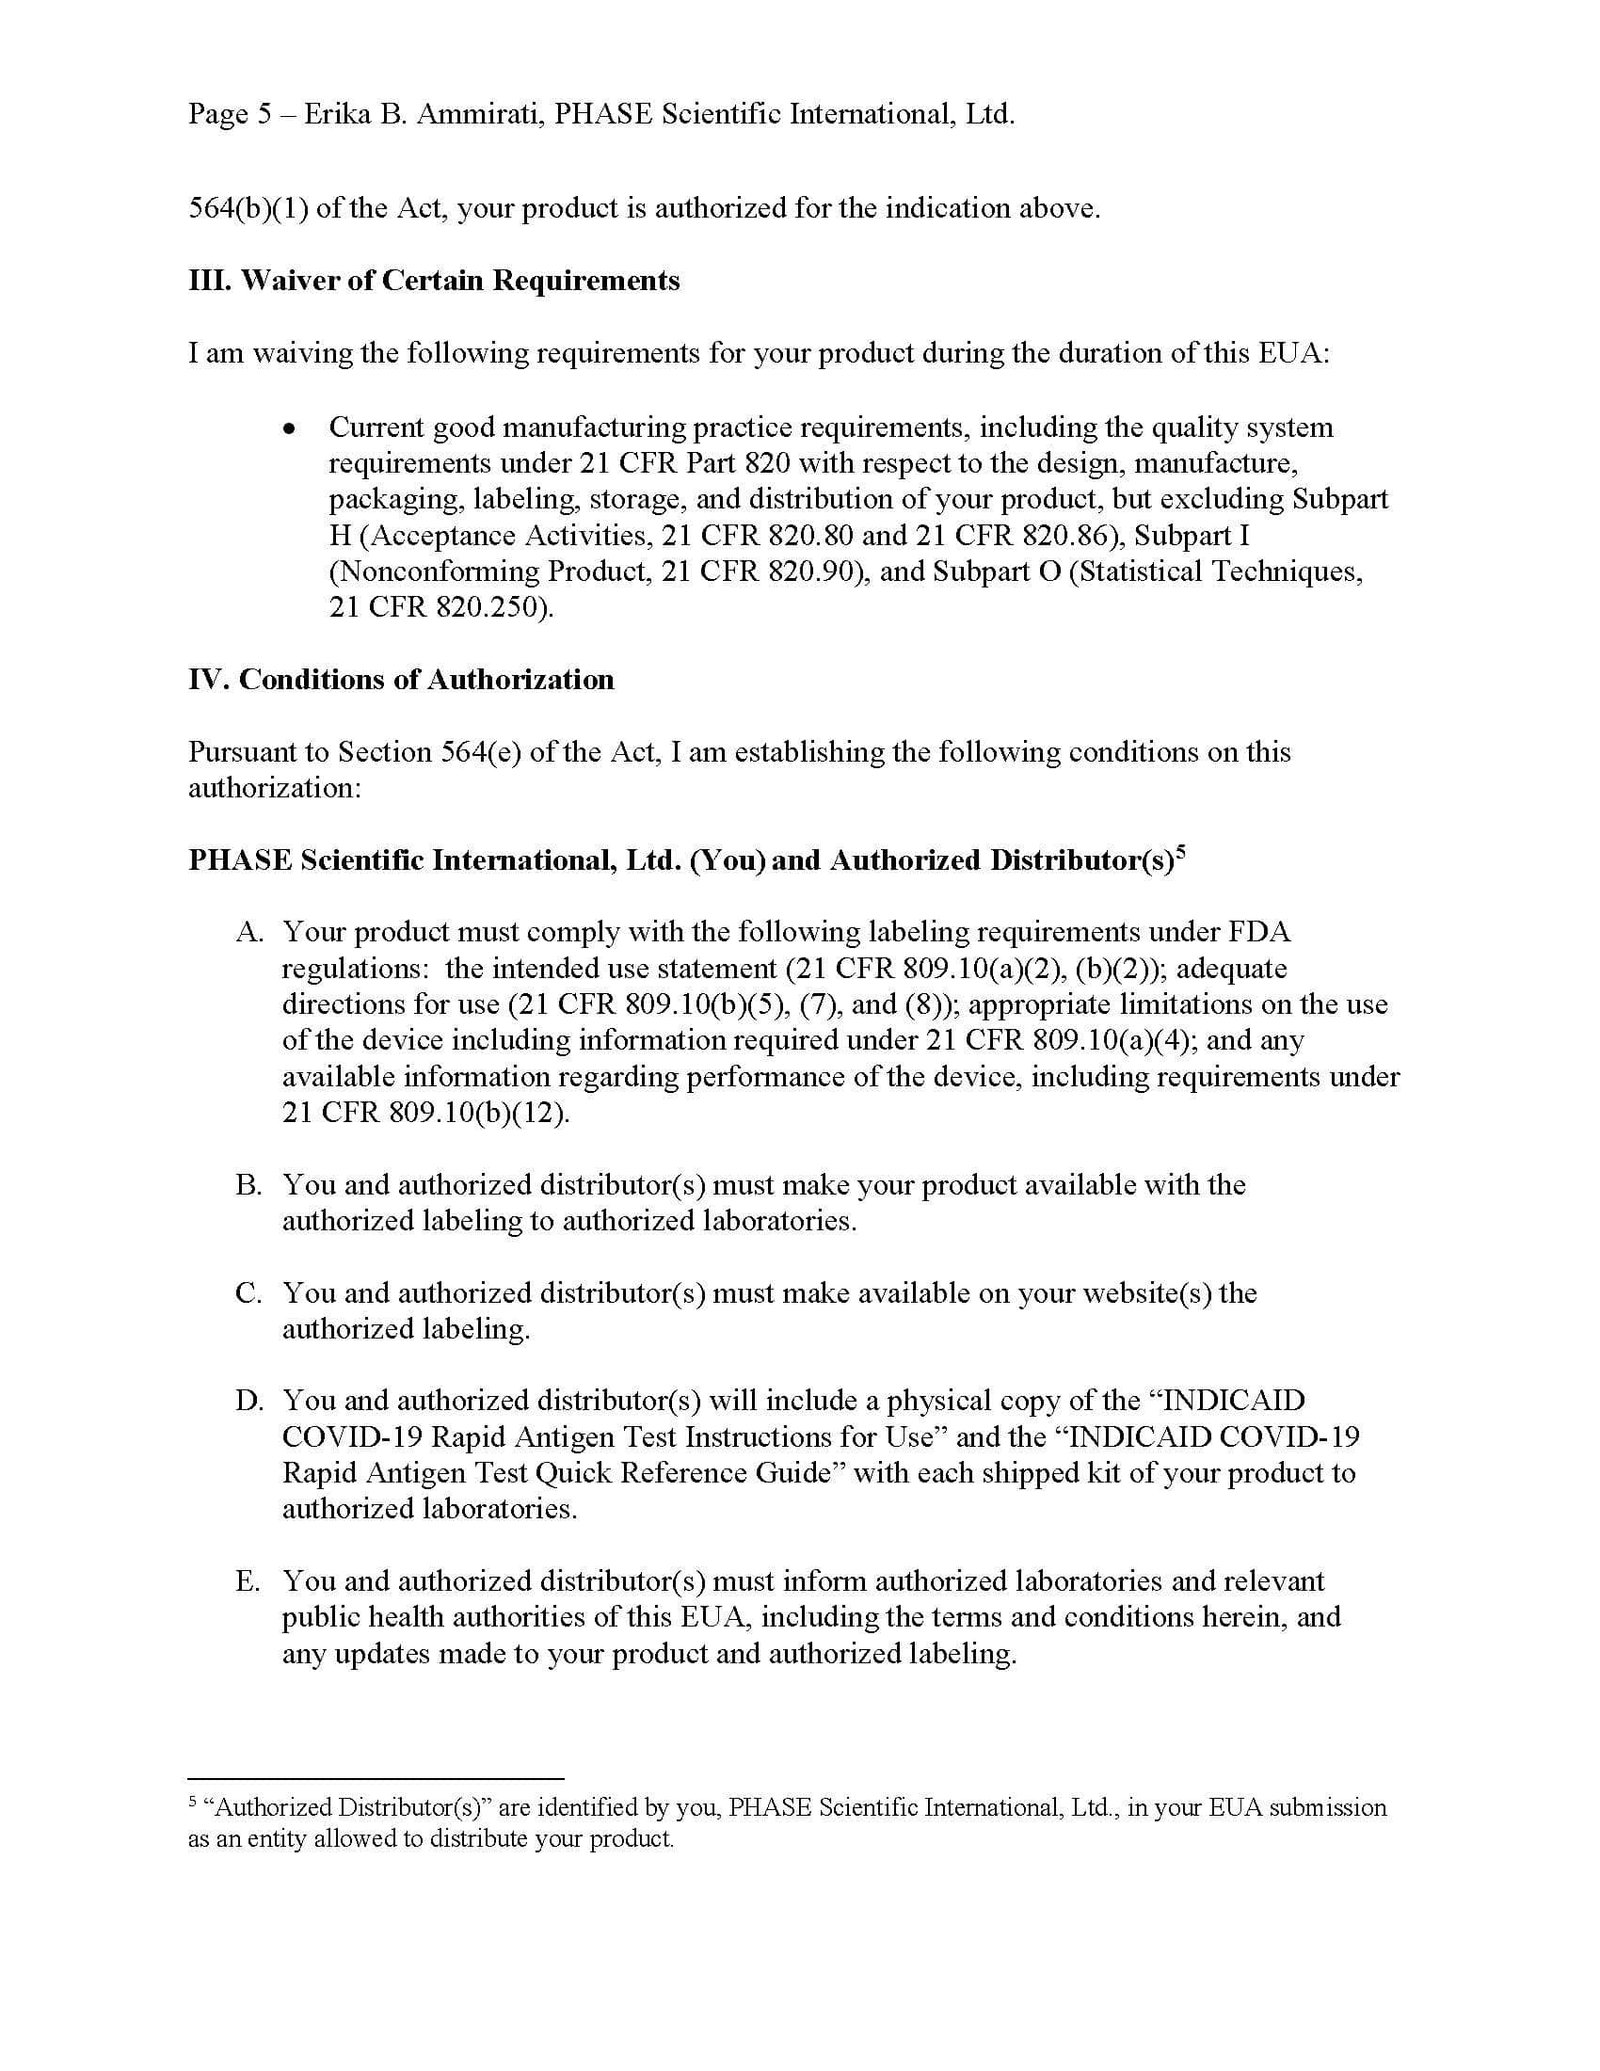 Indicaid FDA EUA Page 5